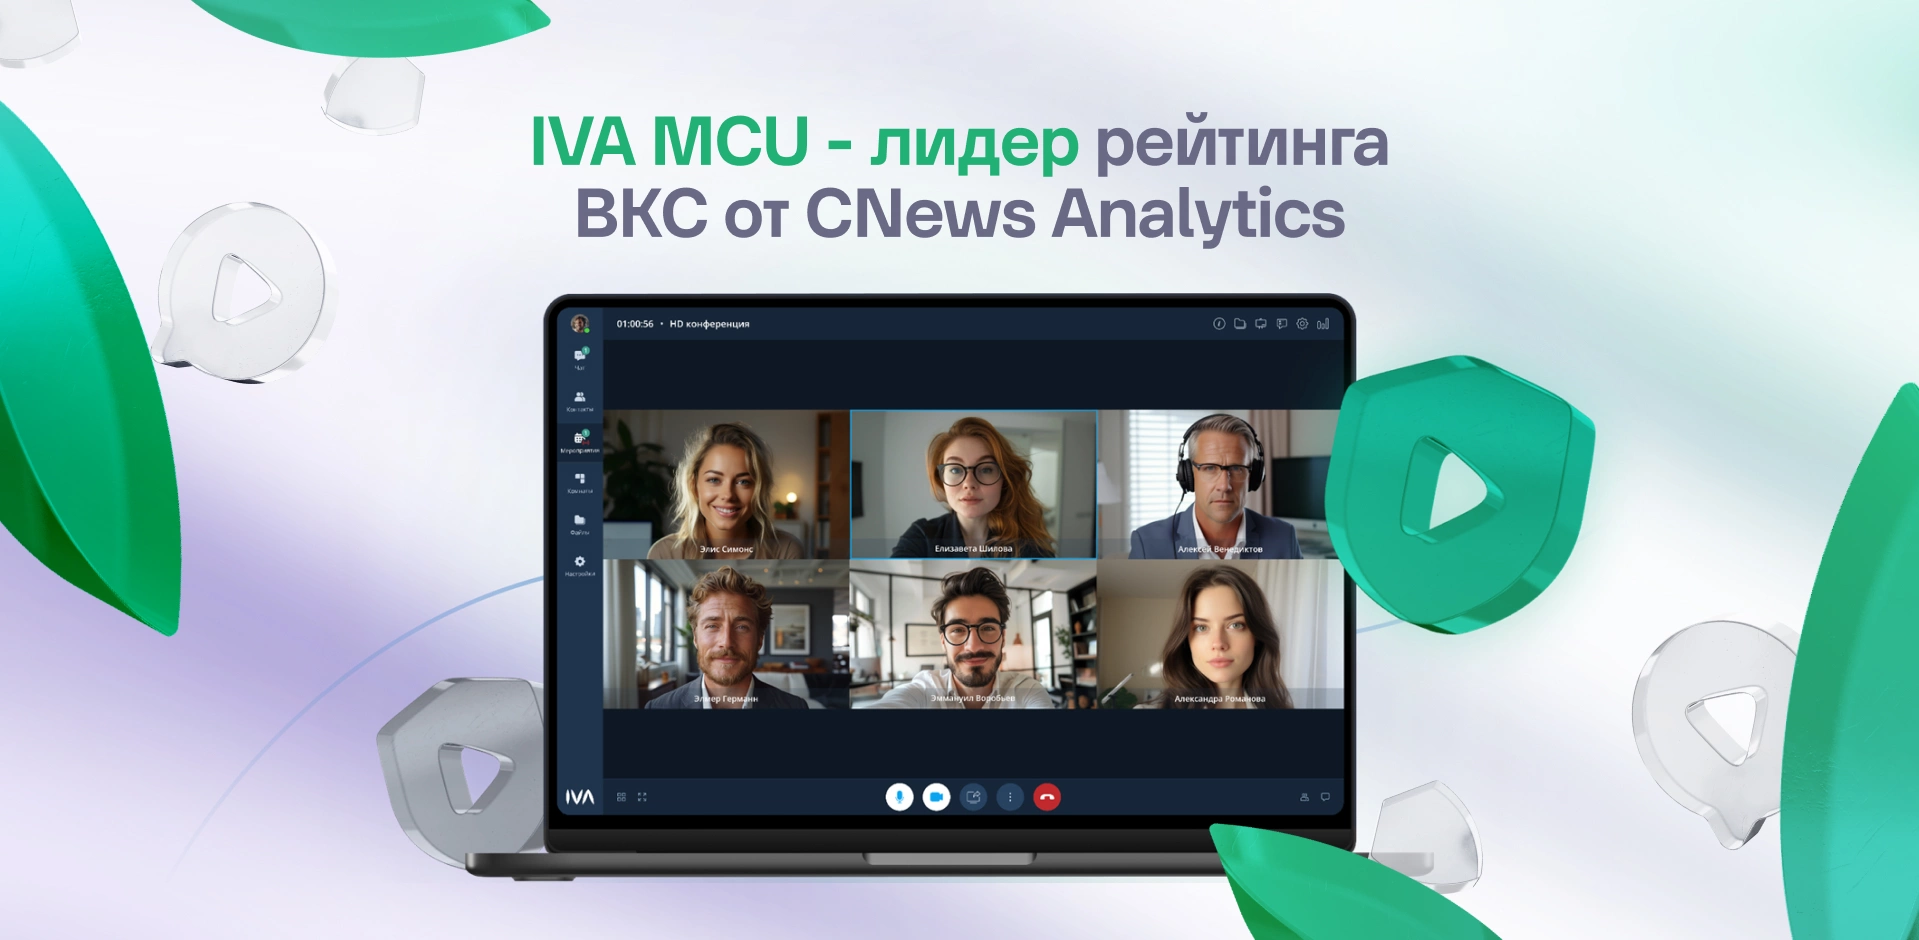 IVA MCU возглавила рейтинг ВКС от CNews Analytics второй год подряд